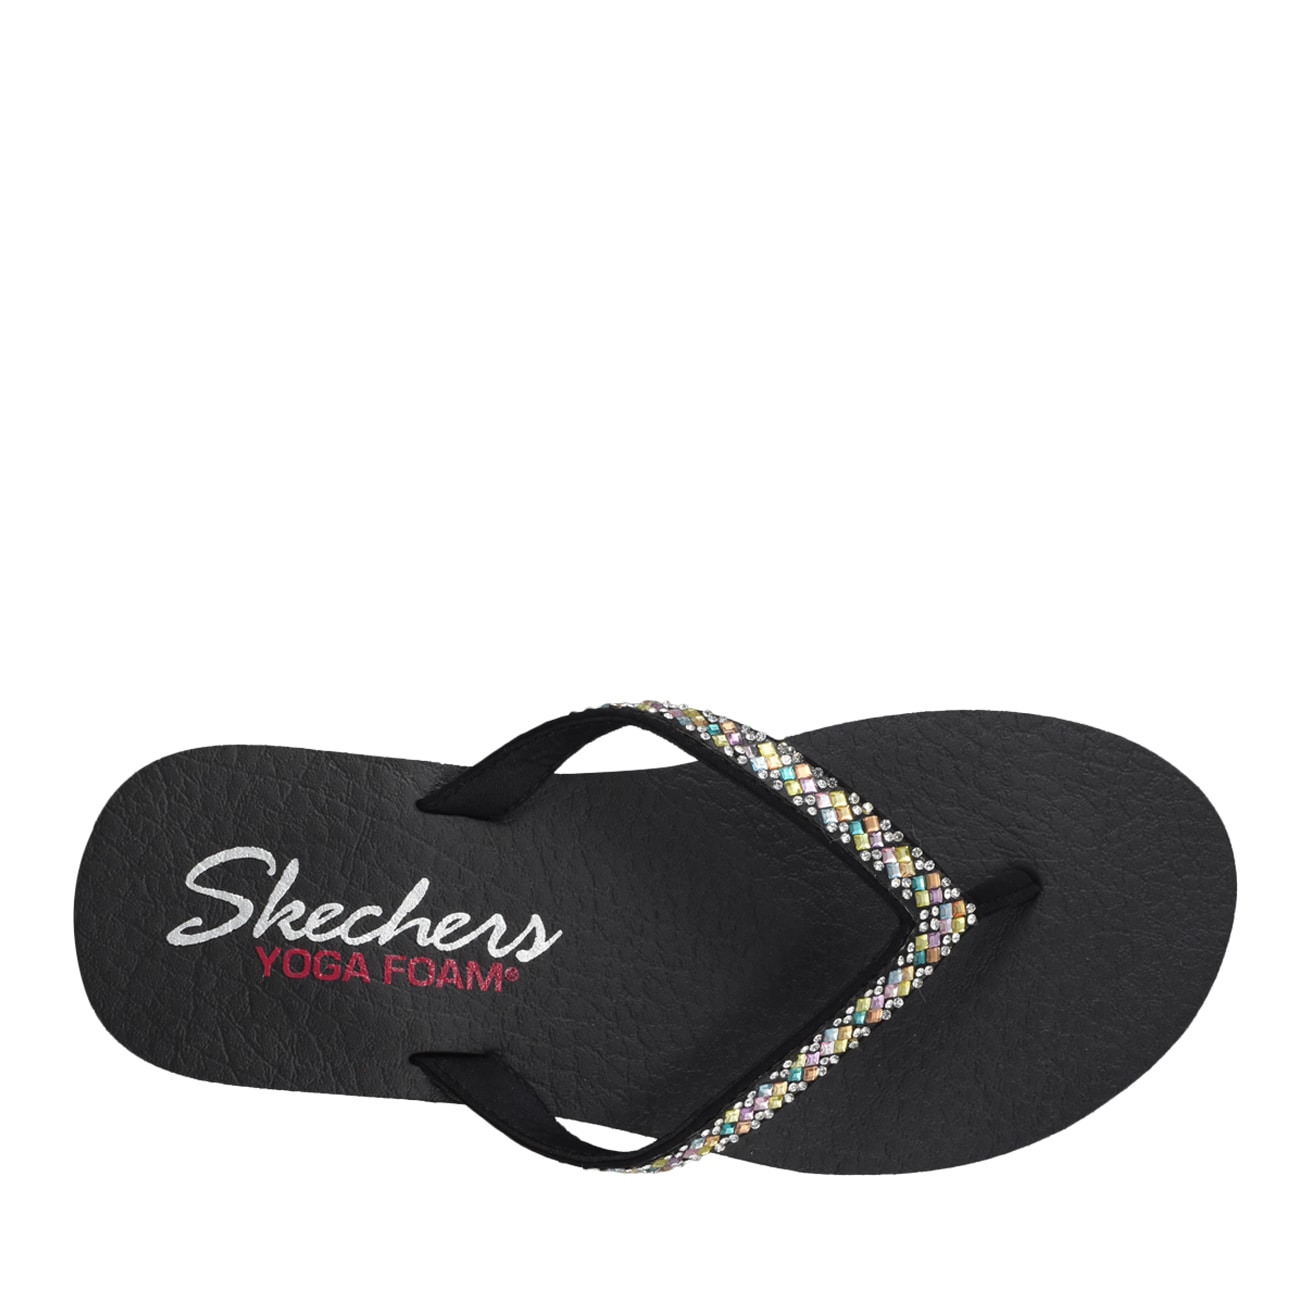 Skechers Thong Sandal | The Shoe Company